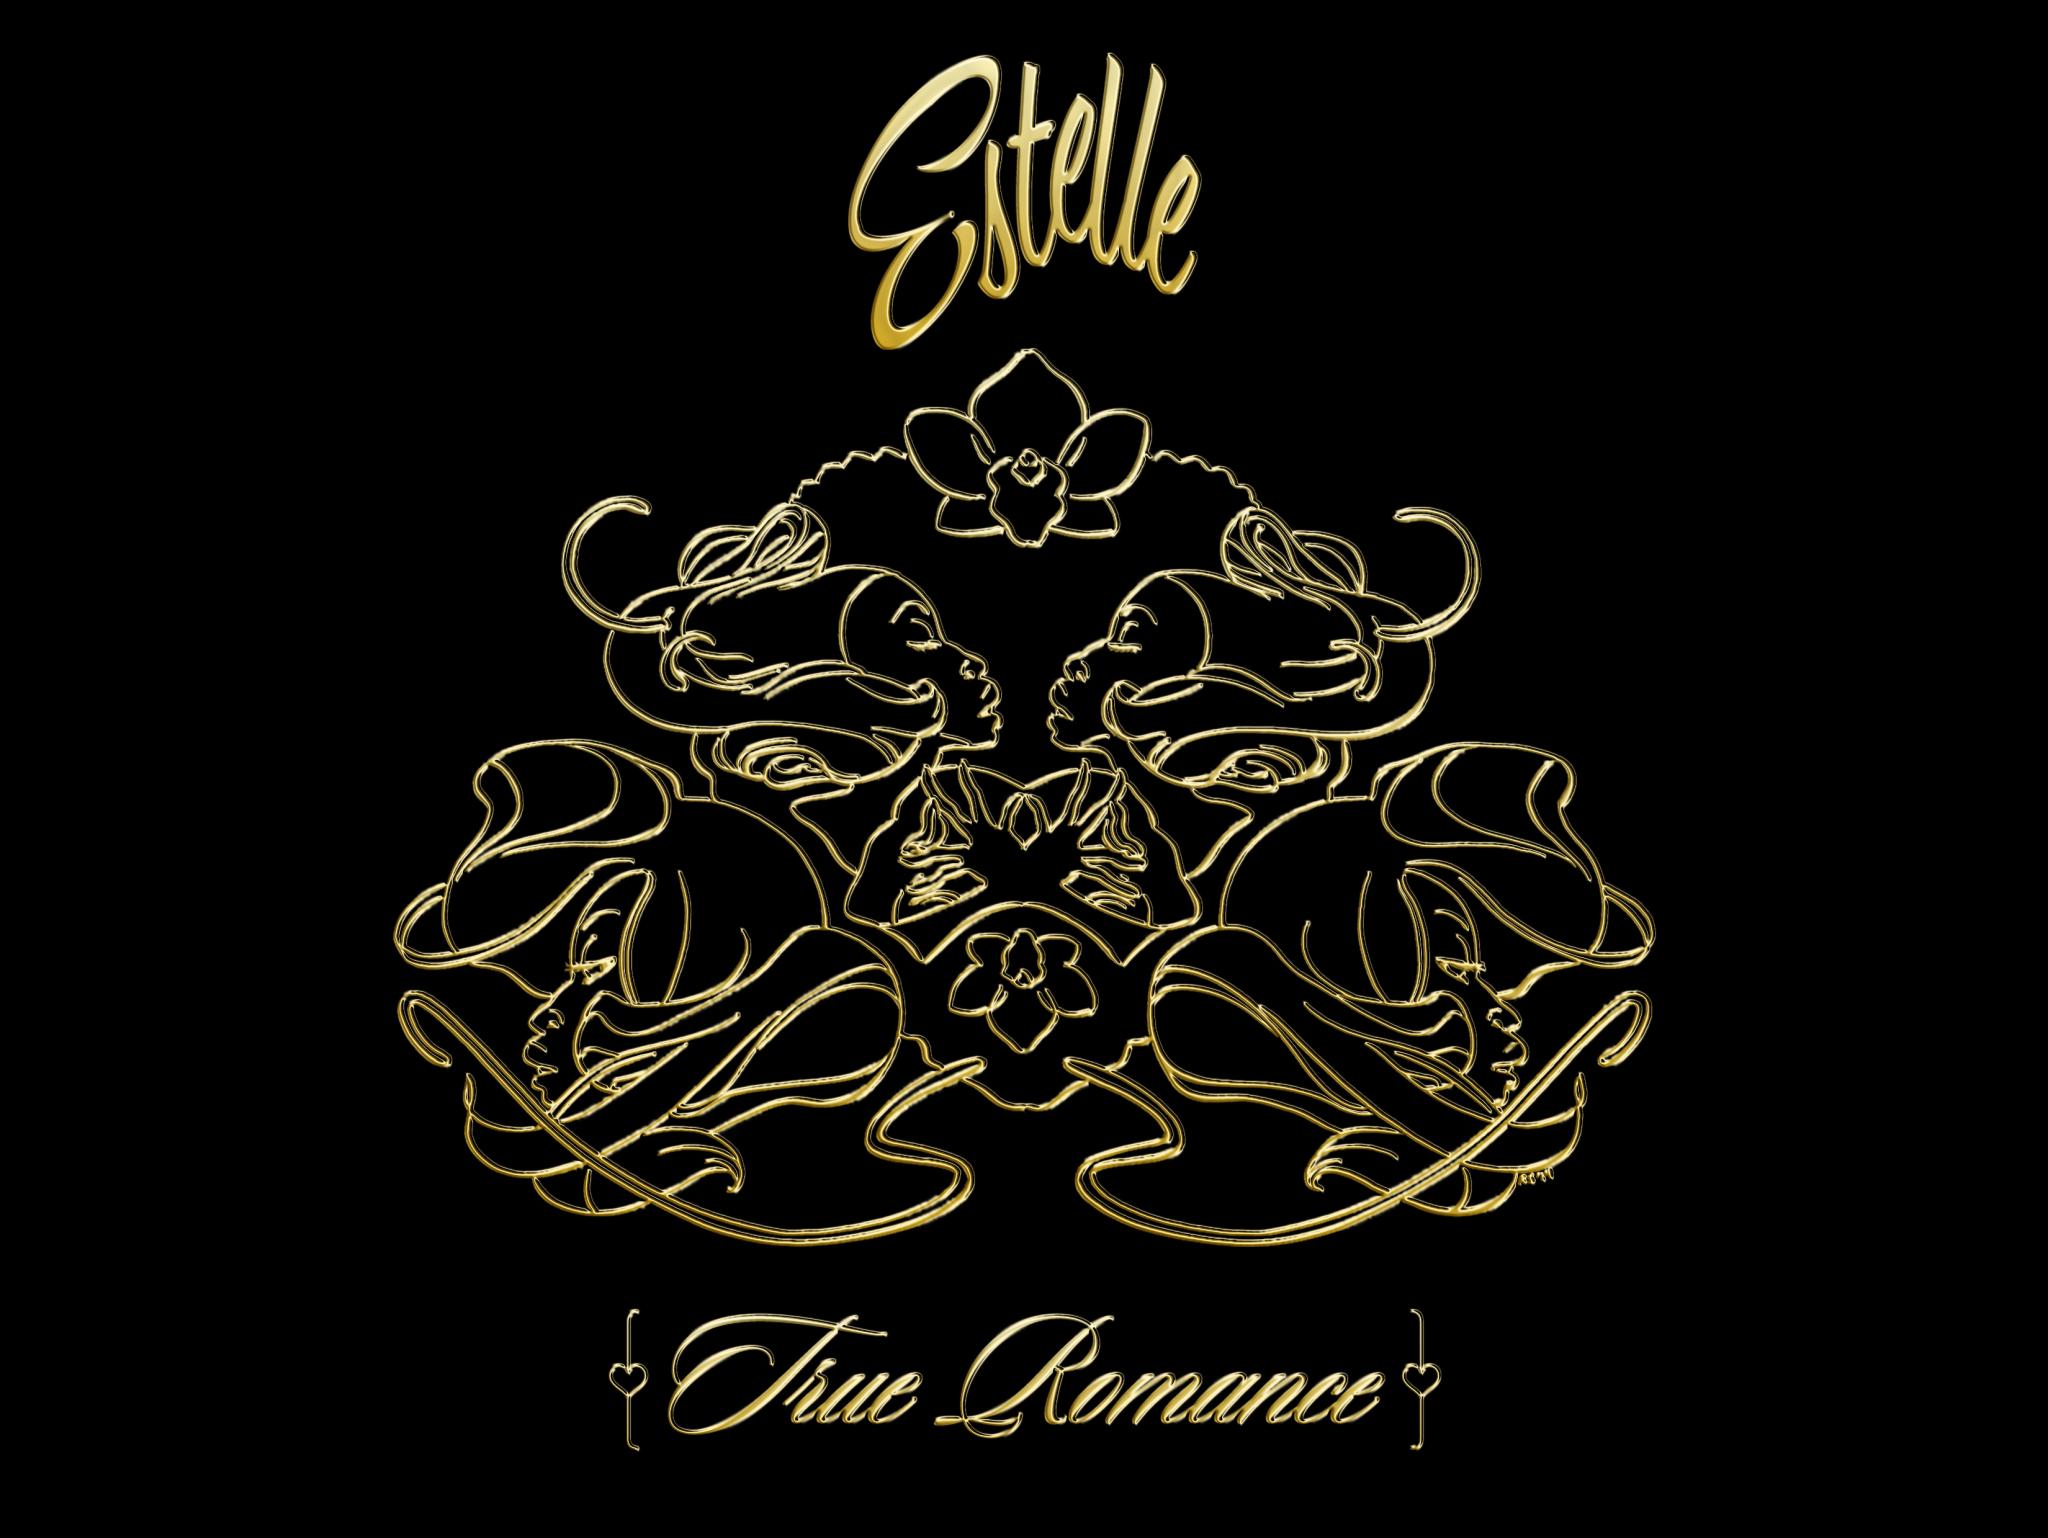 Album Review: 'True Romance' - Estelle
